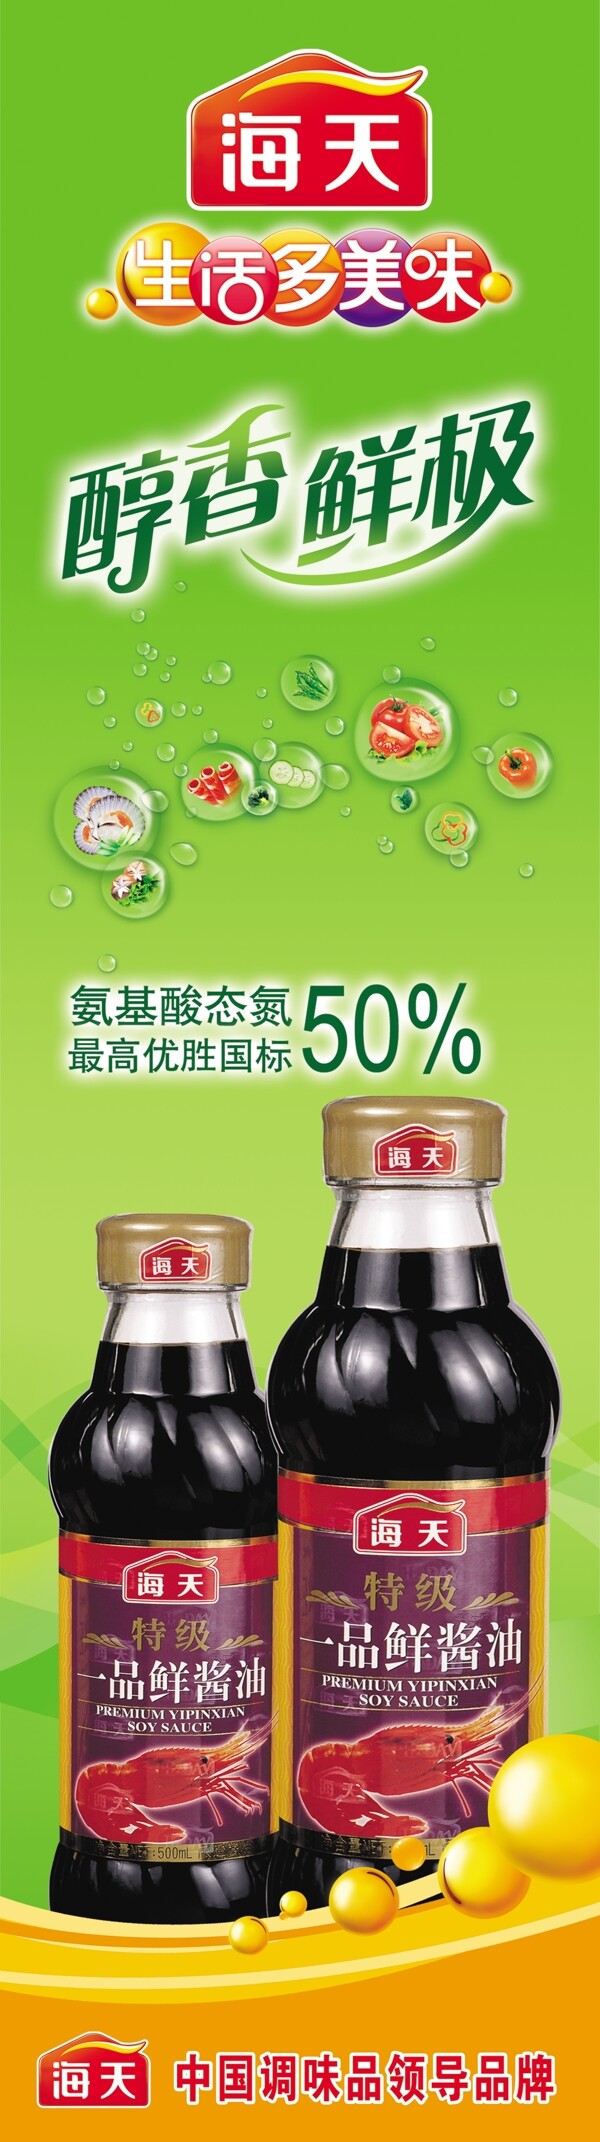 海天酱油广告图图片